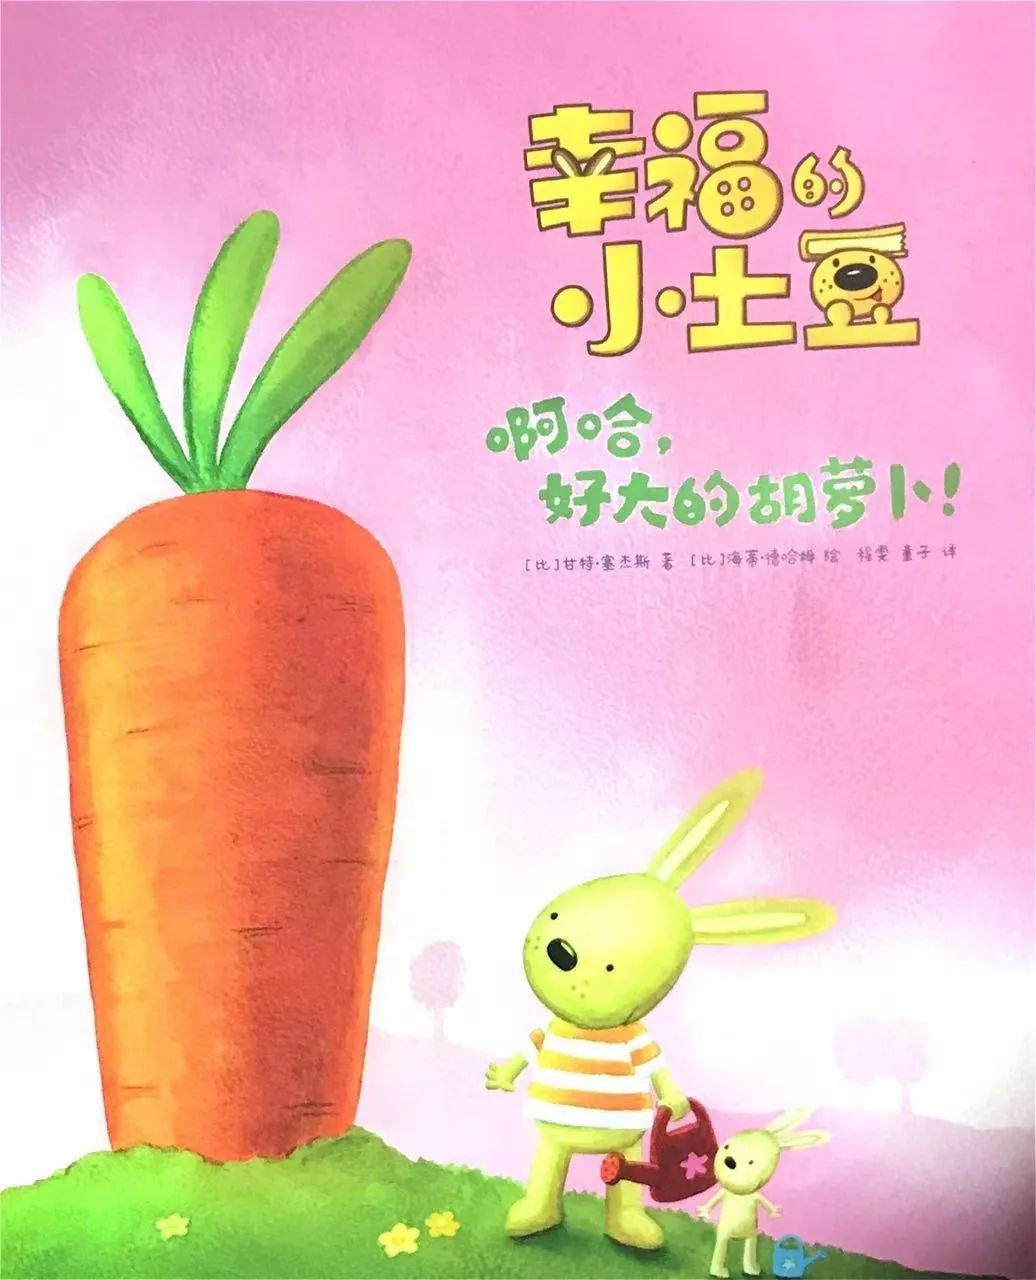 墨洋之声丨幸福的小土豆系列啊哈好大的胡萝卜